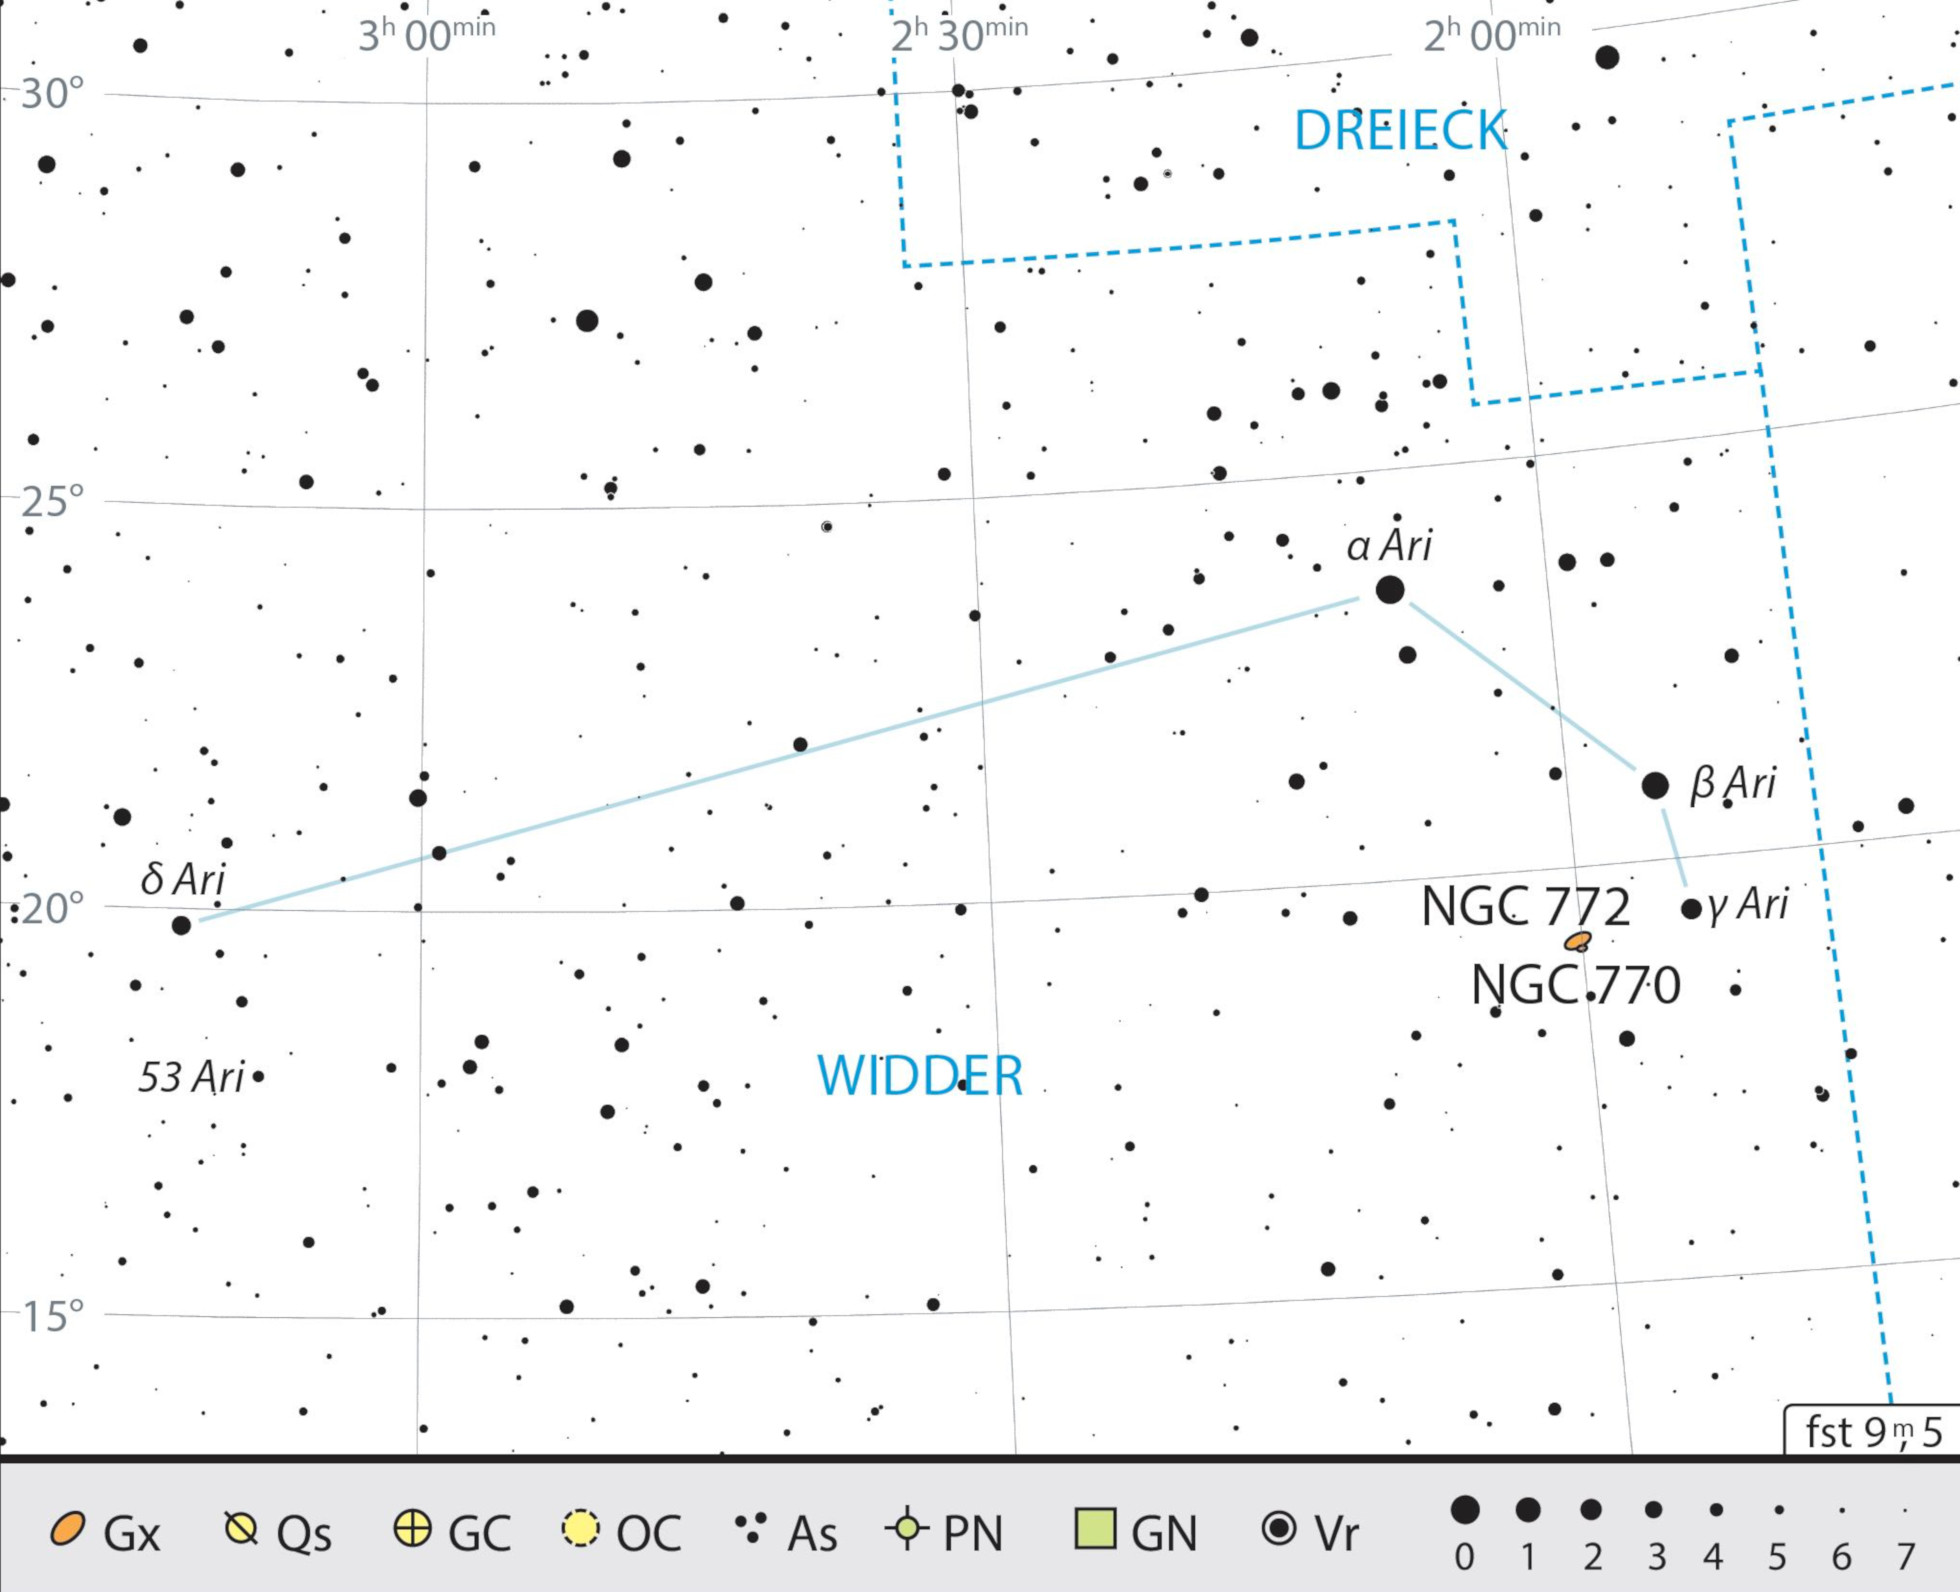 Mappa celeste per la costellazione dell'Ariete, con gli oggetti consigliati.